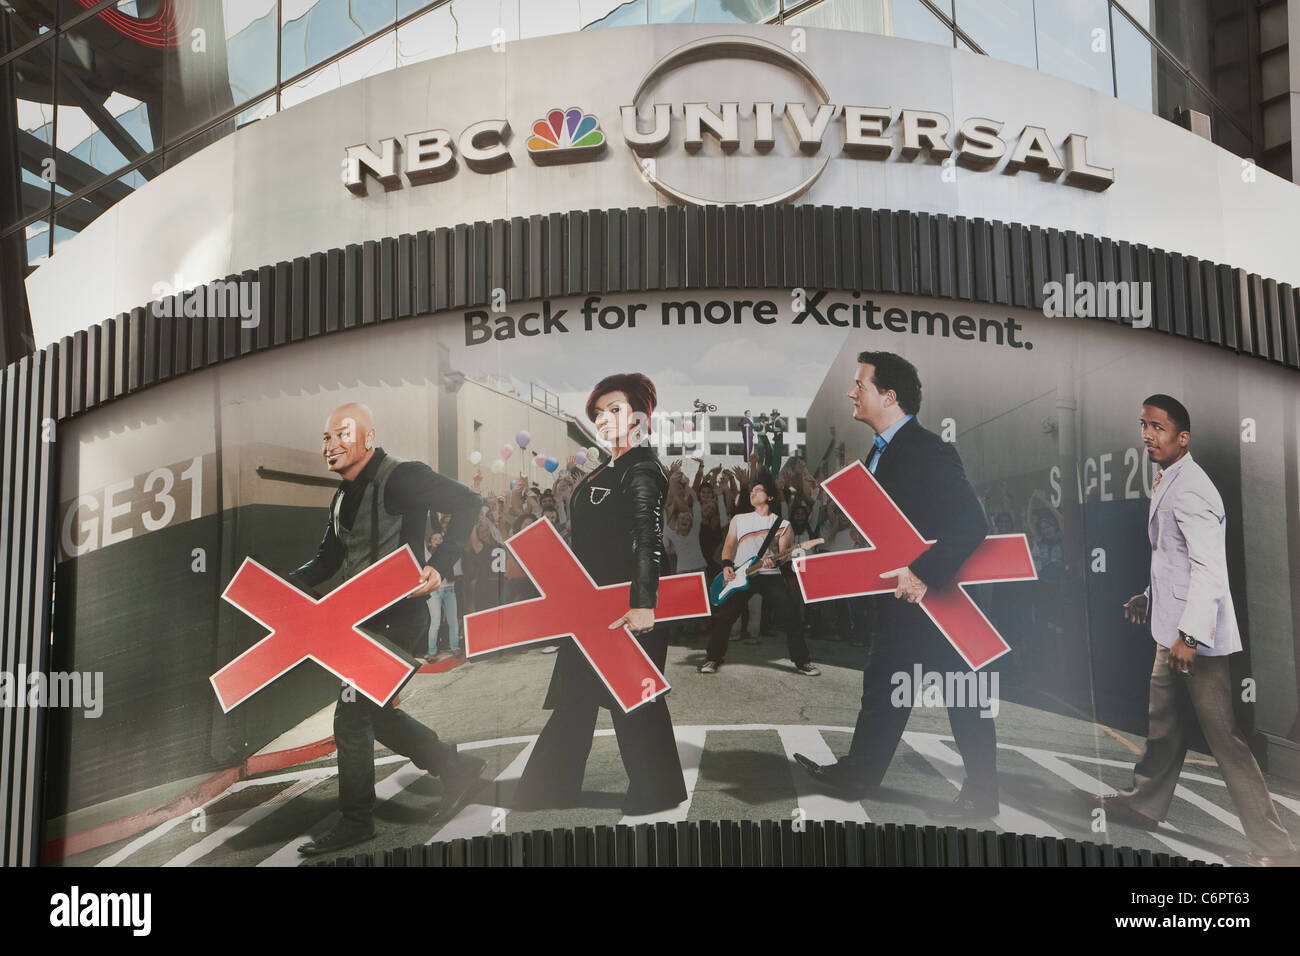 Un panneau publicitaire pour le show de NBC America's Got Talent à New York Banque D'Images